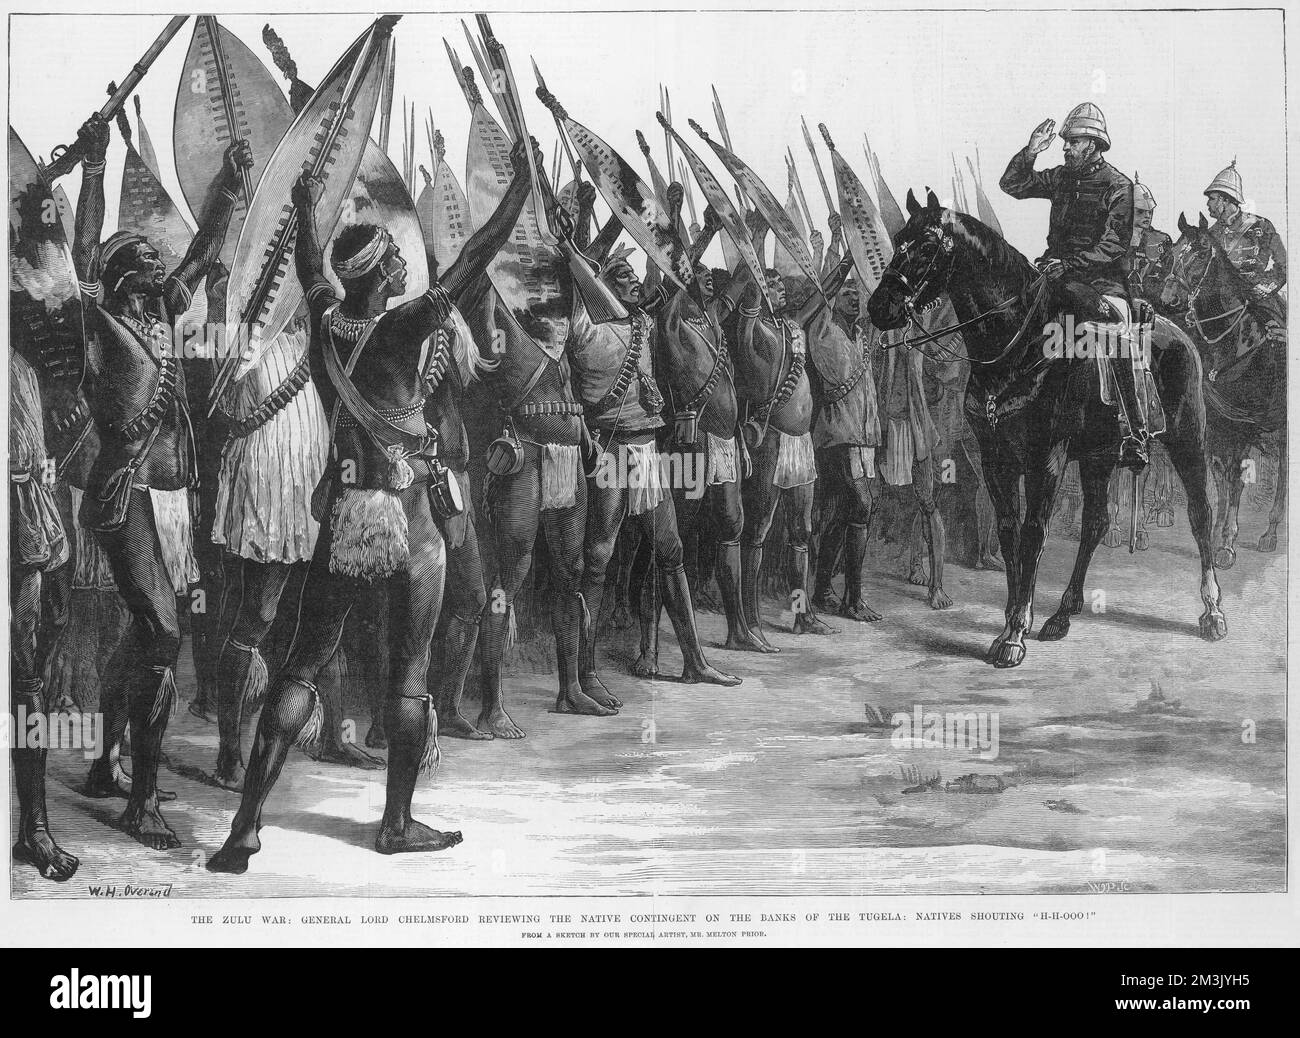 Gravure montrant Lord Chelmsford sur un dos de cheval examinant un groupe de guerriers Zulu, qui travaillaient pour l'armée britannique. Les guerriers Zulu sont armés de fusils ainsi que de leurs boucliers et lances traditionnels. Date: 1879 Banque D'Images